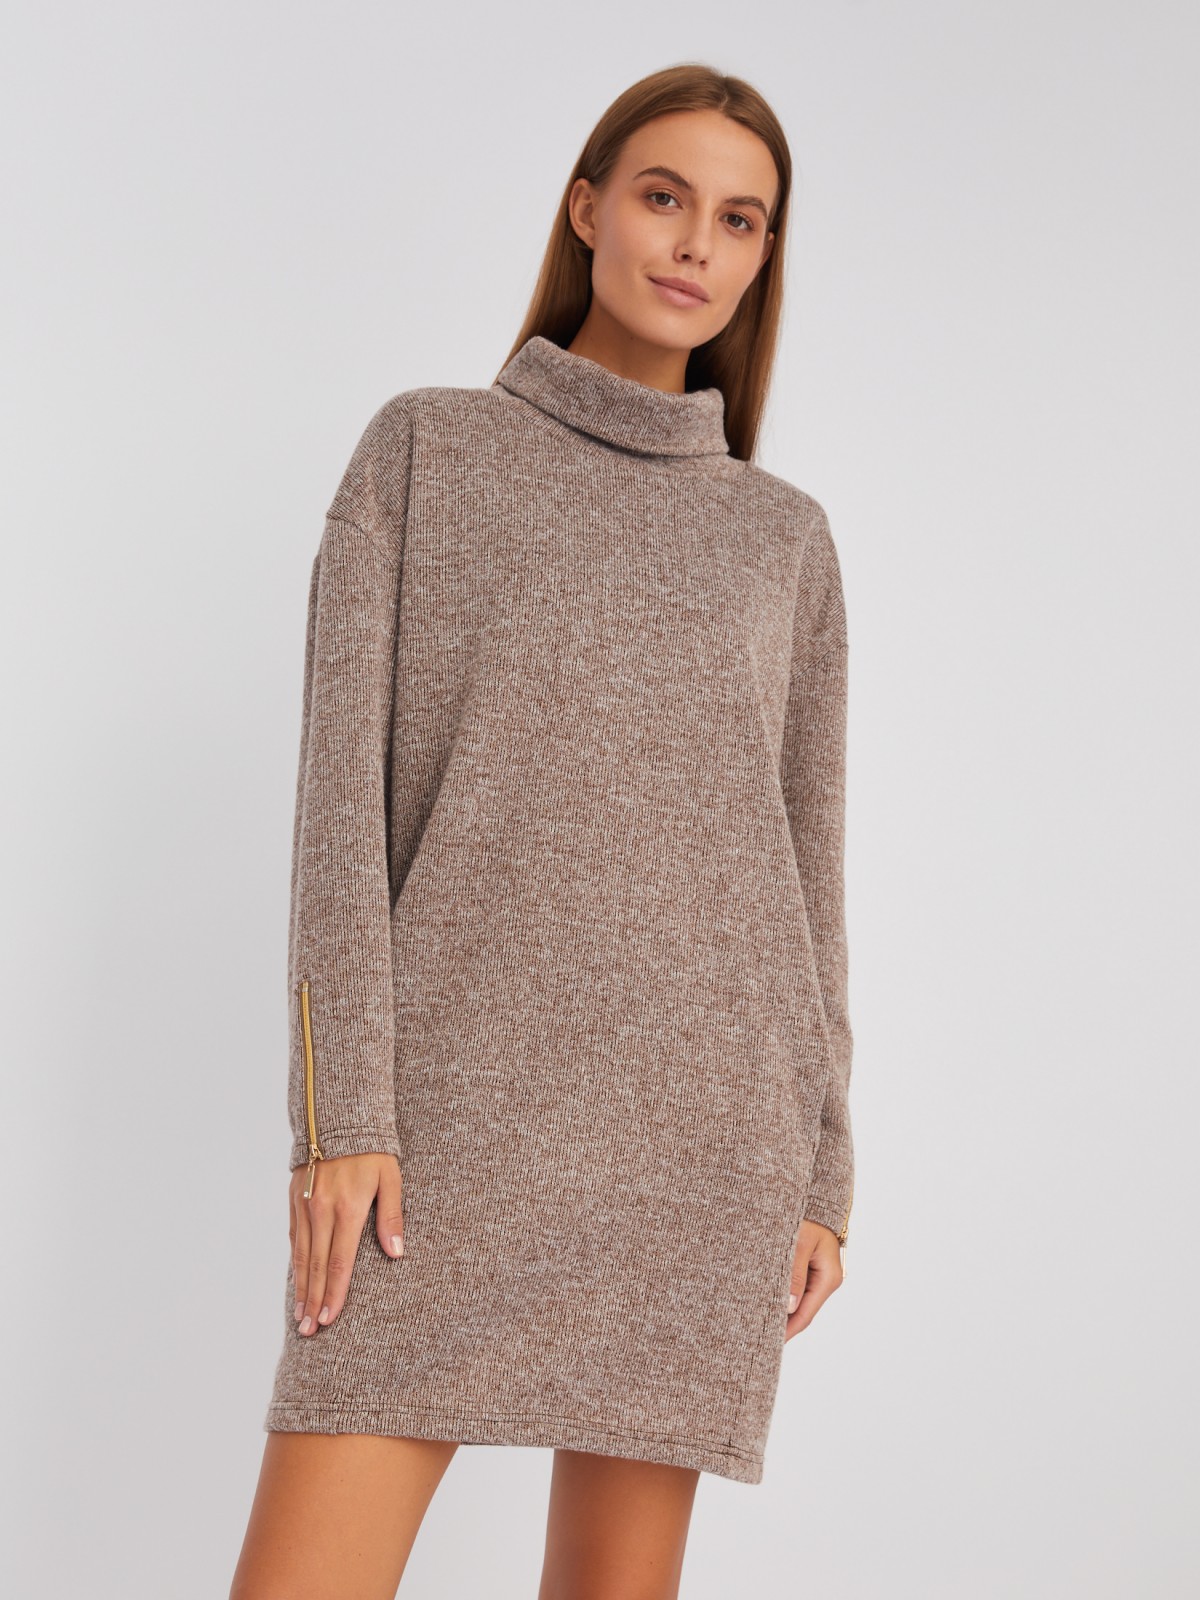 Трикотажное платье-свитер с высоким горлом и акцентом на манжетах zolla 02343819F032, цвет коричневый, размер XS